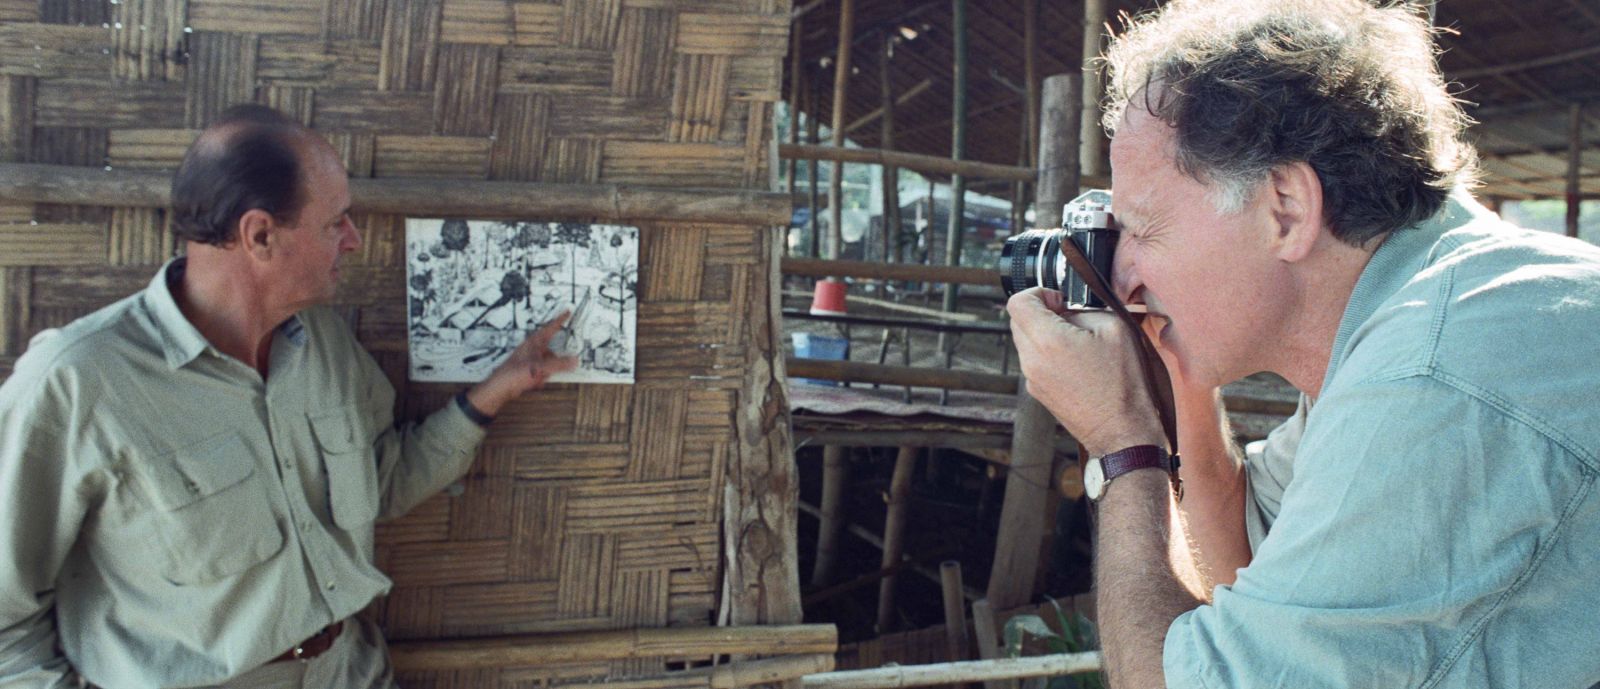 Der Regisseur Werner Herzog fotografiert Dieter Dengler, der auf eine Fotografie deutet